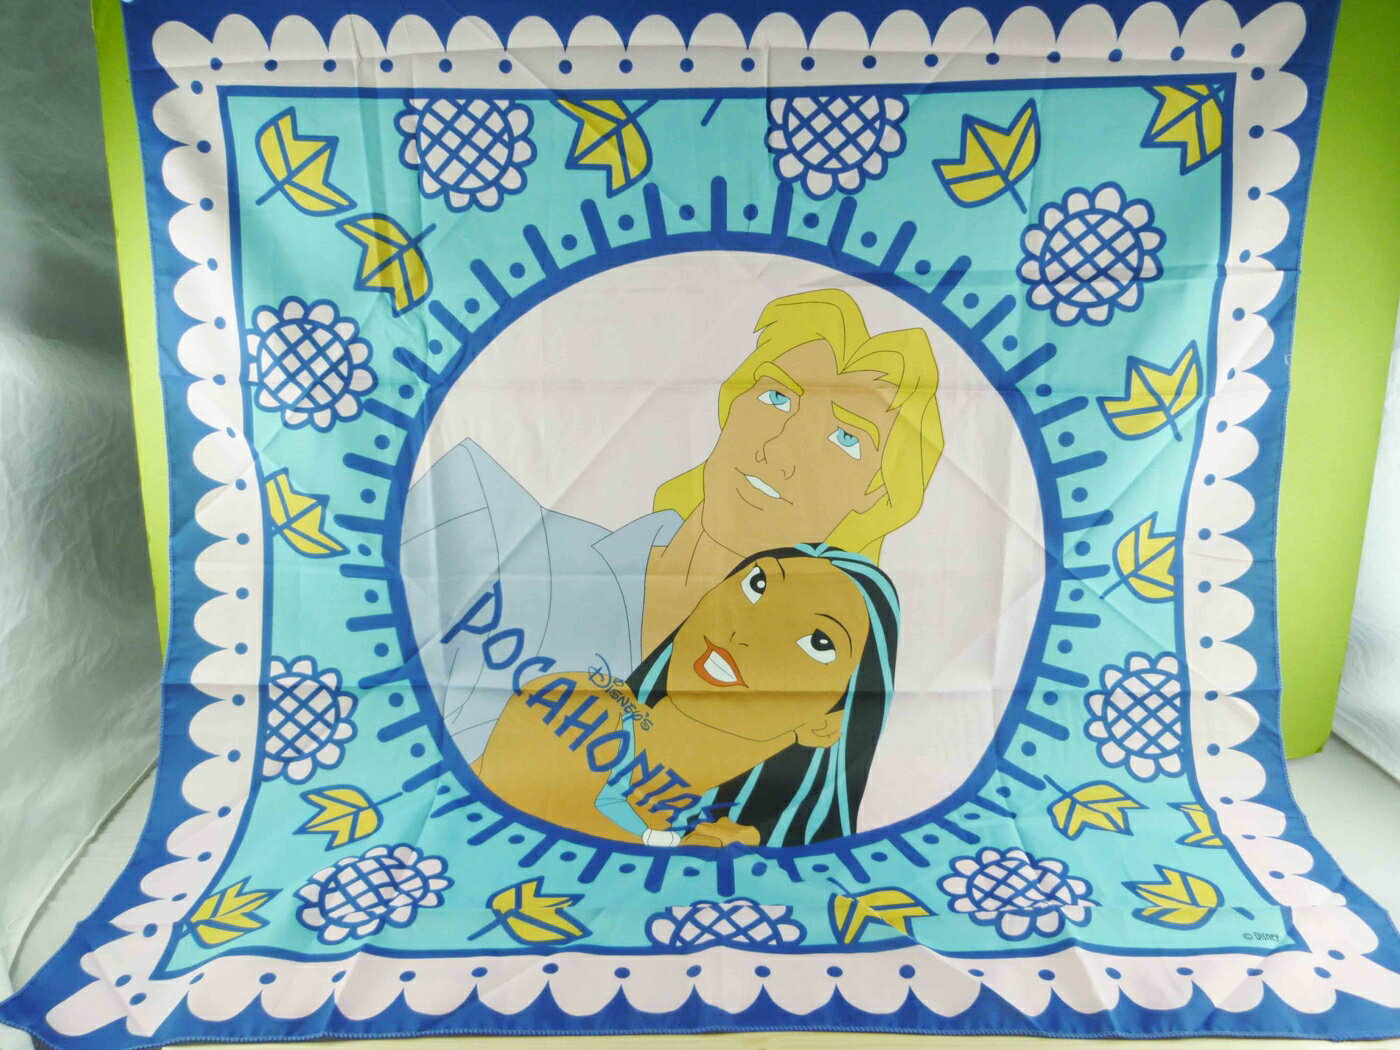 【震撼精品百貨】Disney 迪士尼 Pocahontas 風中奇緣 絲巾-鳳中奇緣公主與王子-藍色 震撼日式精品百貨